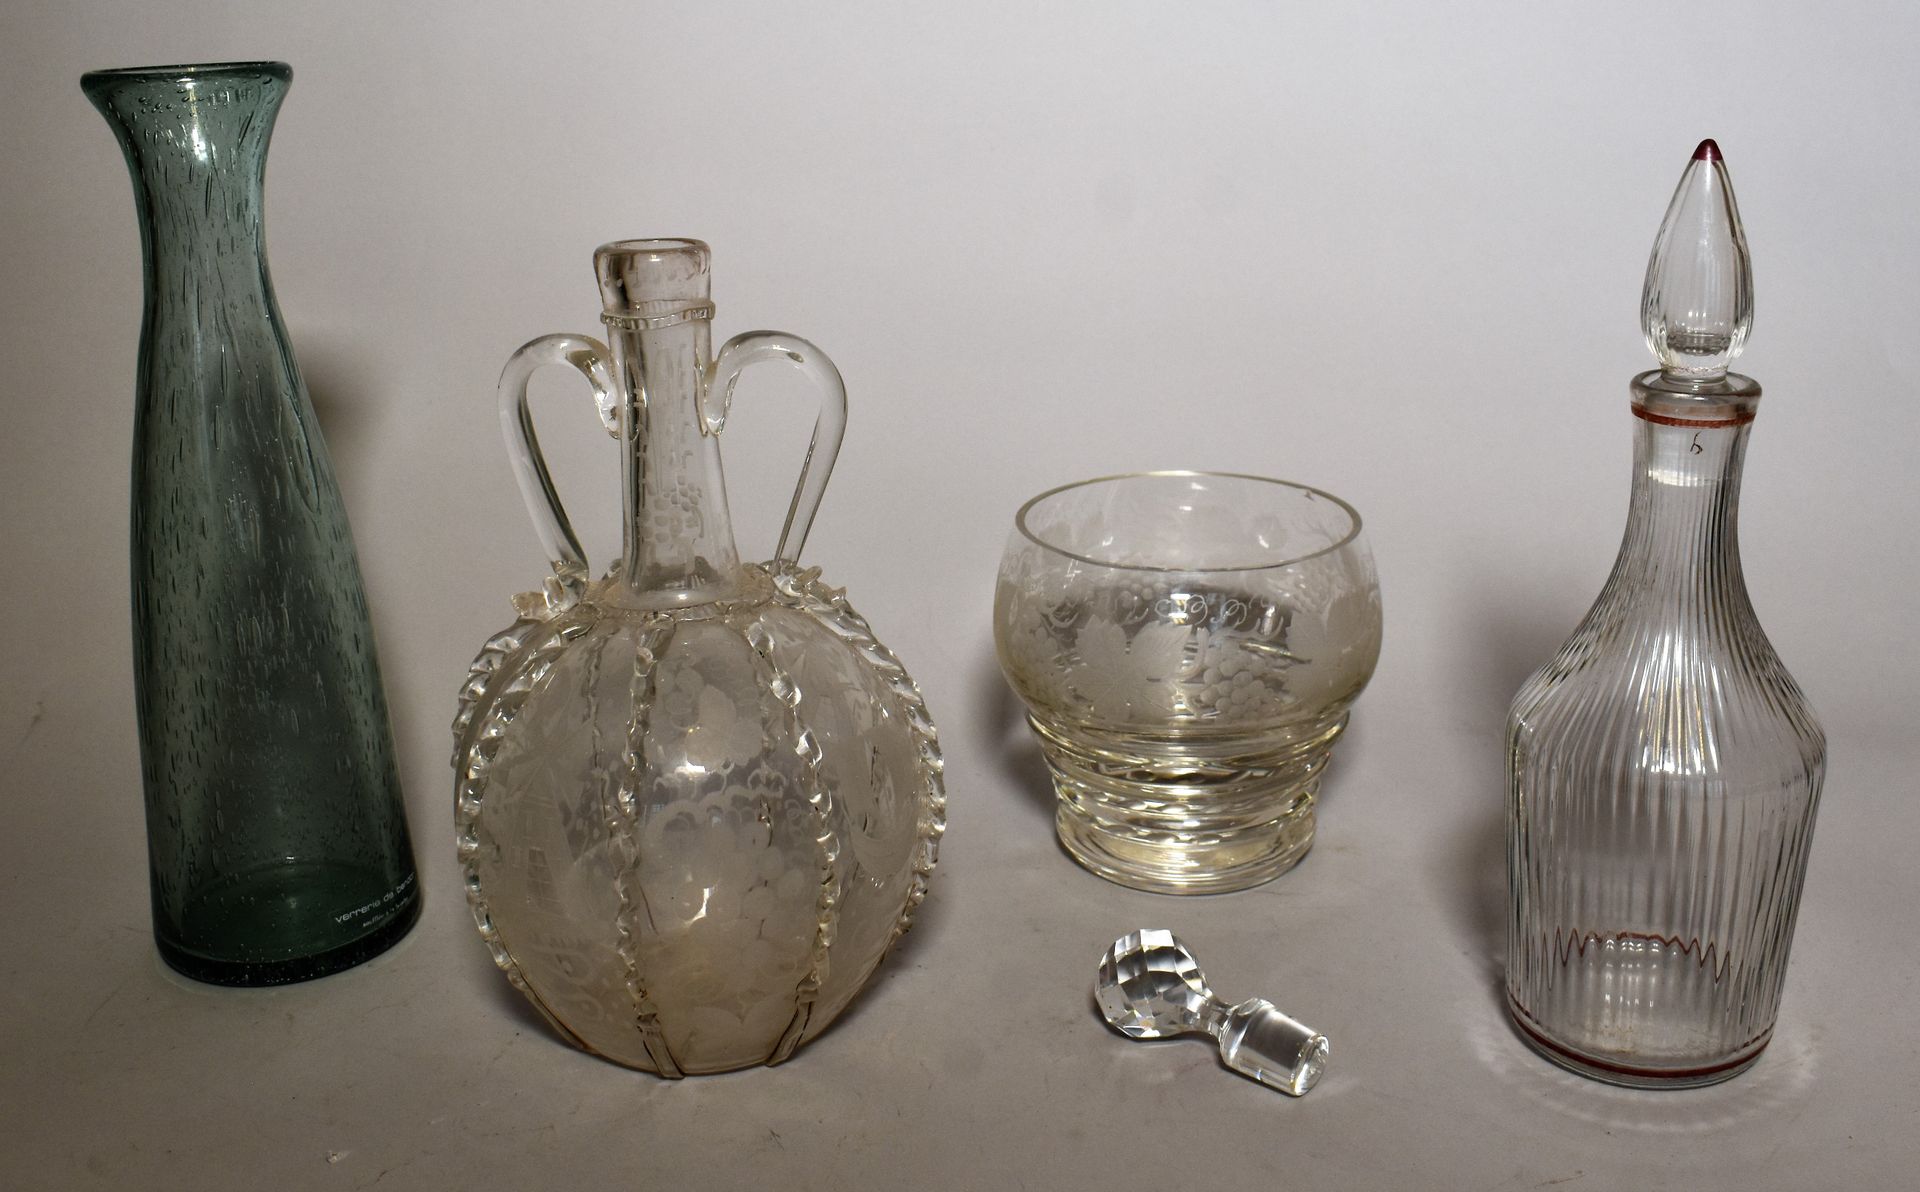 Null 荷兰玻璃花瓶，有两个把手，刻有磨坊、船只和葡萄藤。高24厘米

联合：三个不同的玻璃杯，包括一个带有DELVAUX标签的葡萄瓶（高13厘米），一个BI&hellip;